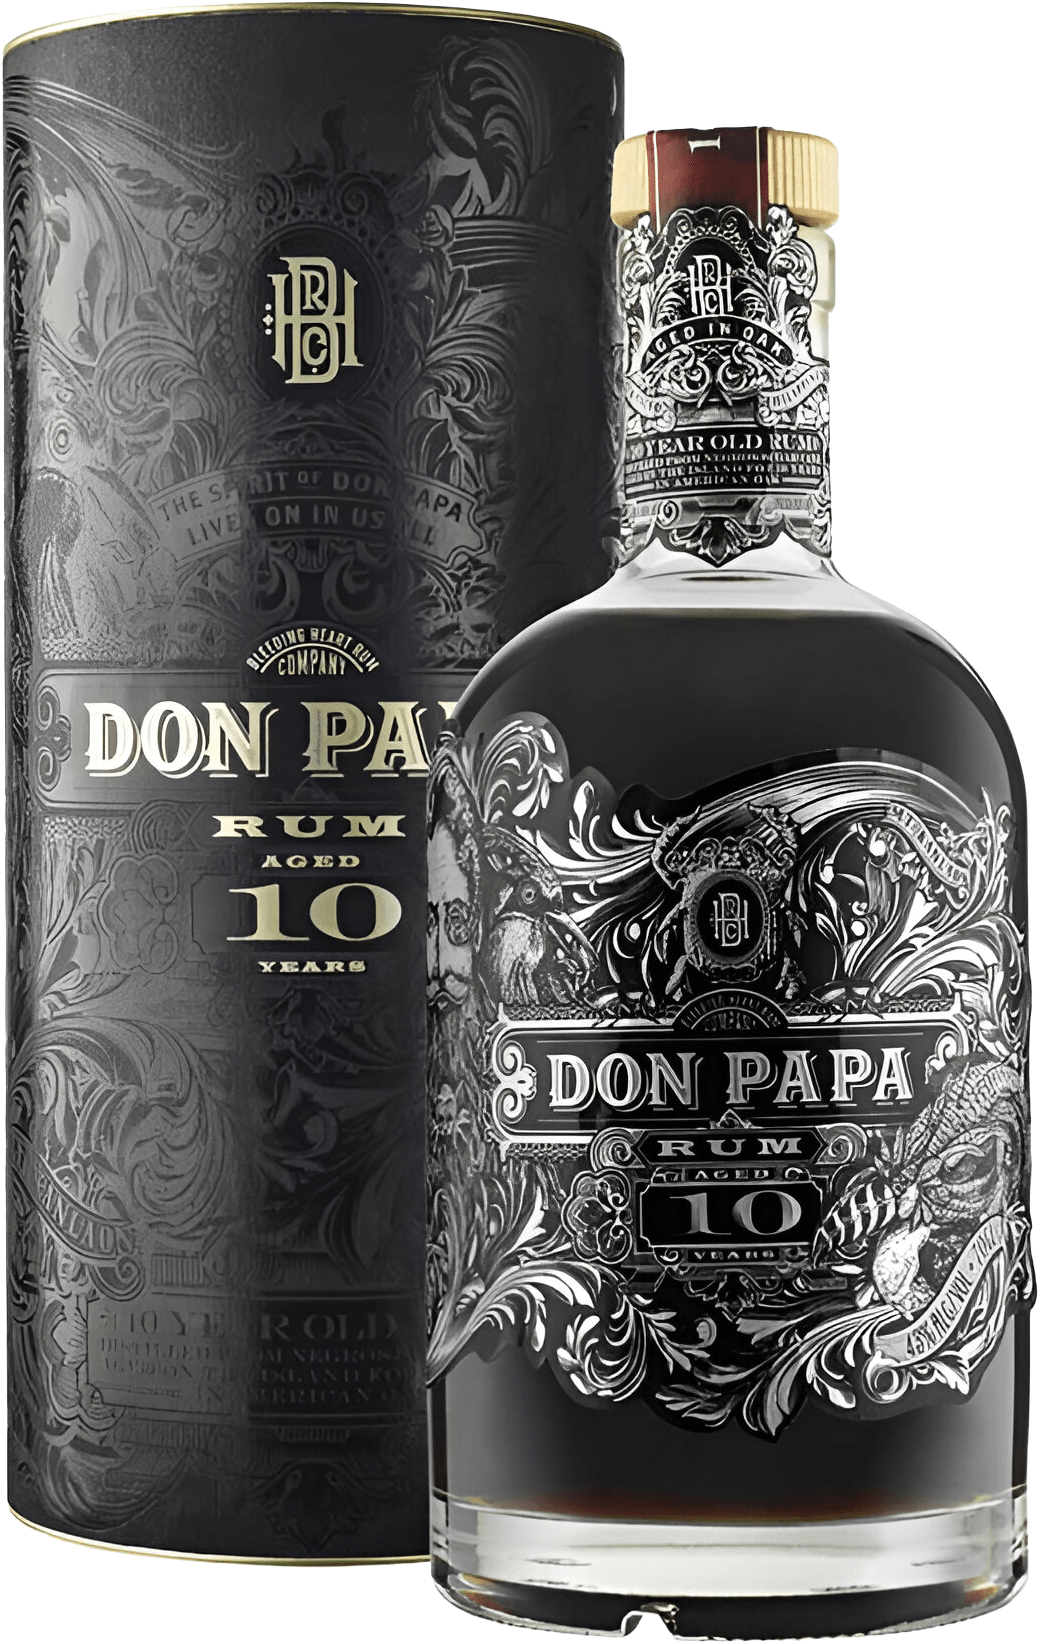 Don Papa 10 ročný rum 43% 0,7l (darčekové balenie kazeta)